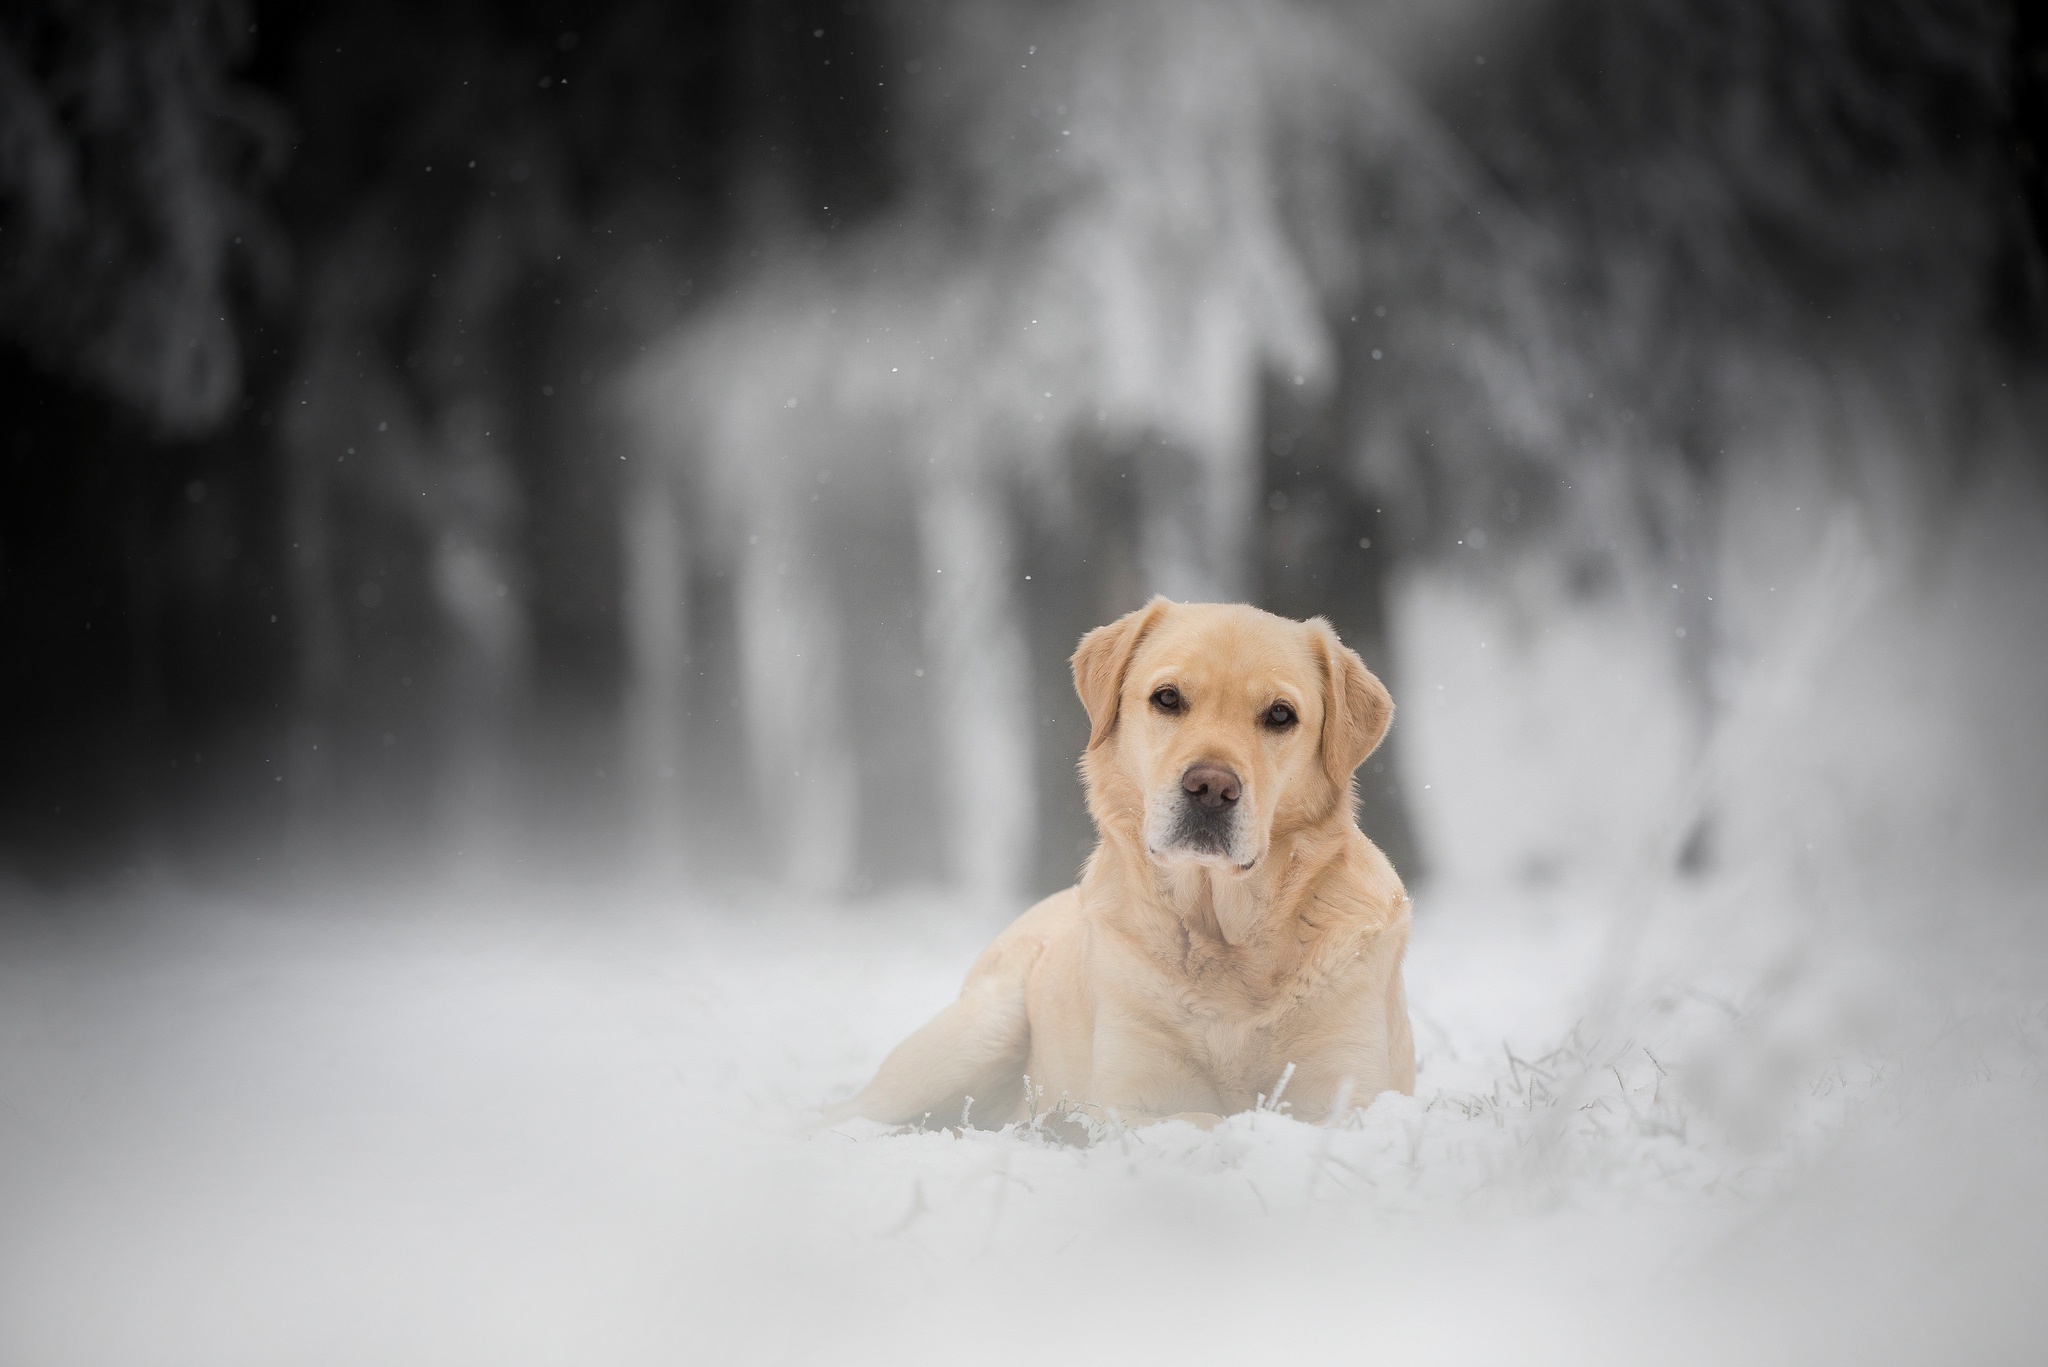 Descarga gratuita de fondo de pantalla para móvil de Animales, Invierno, Perros, Nieve, Perro, Labrador Retriever.